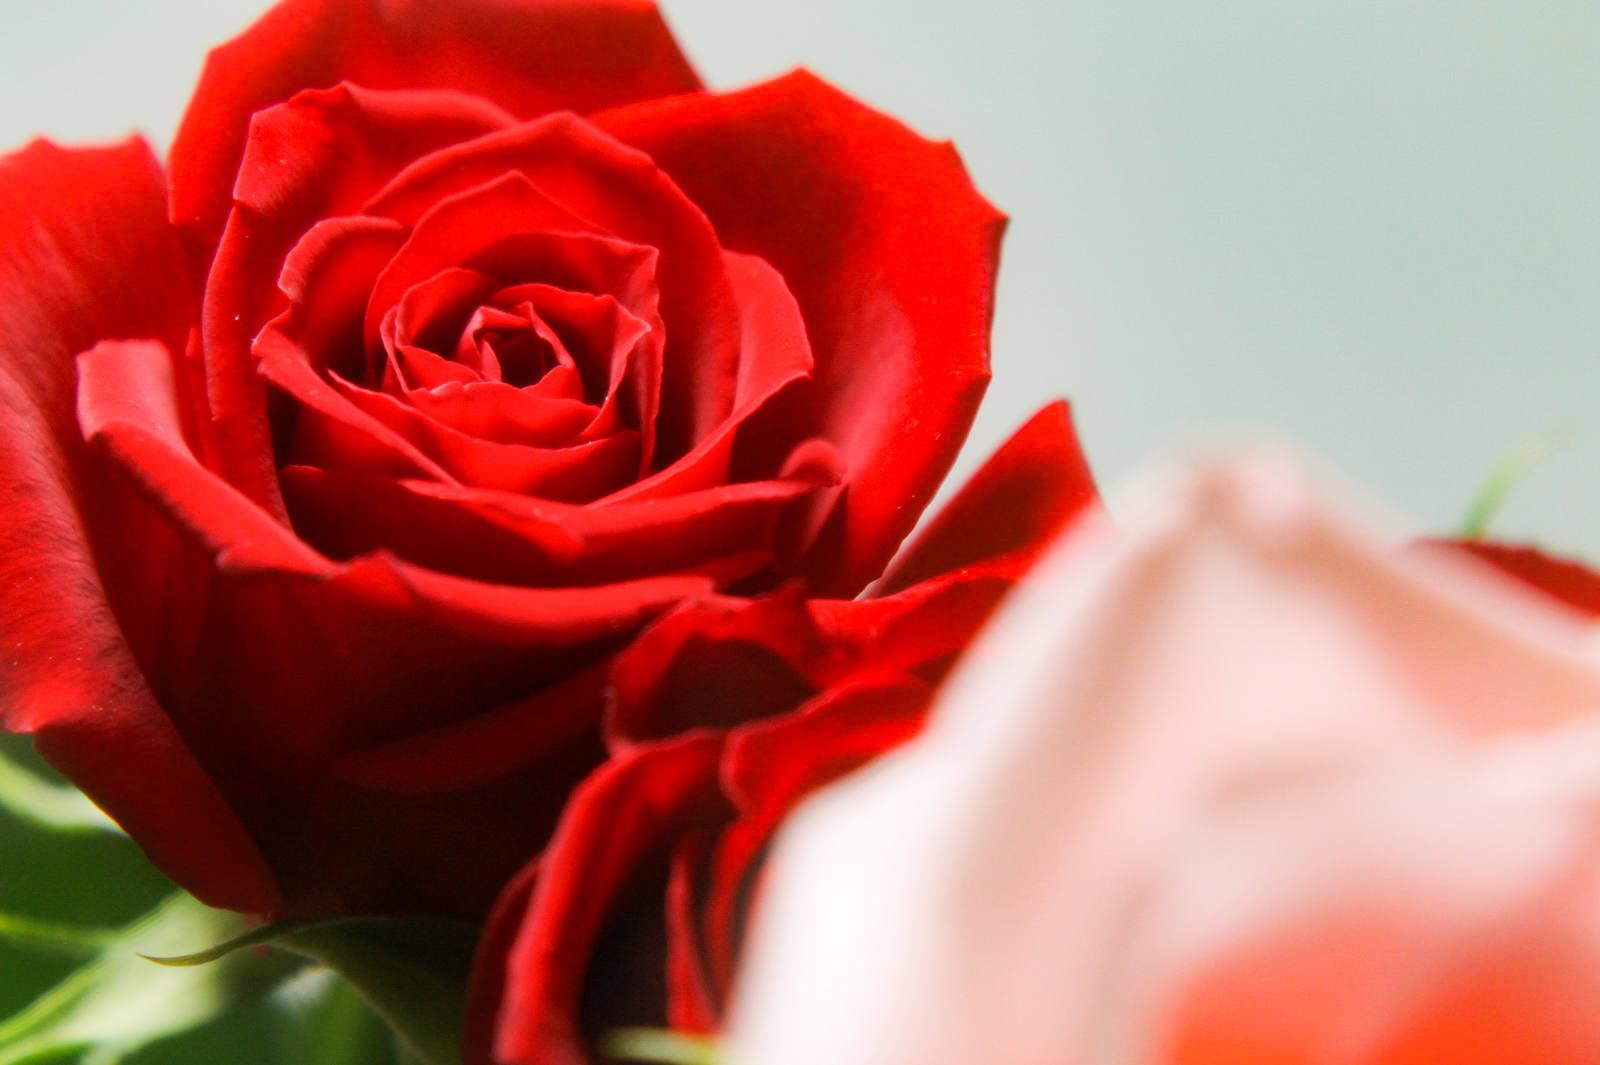 綺麗な赤い色をした薔薇の花